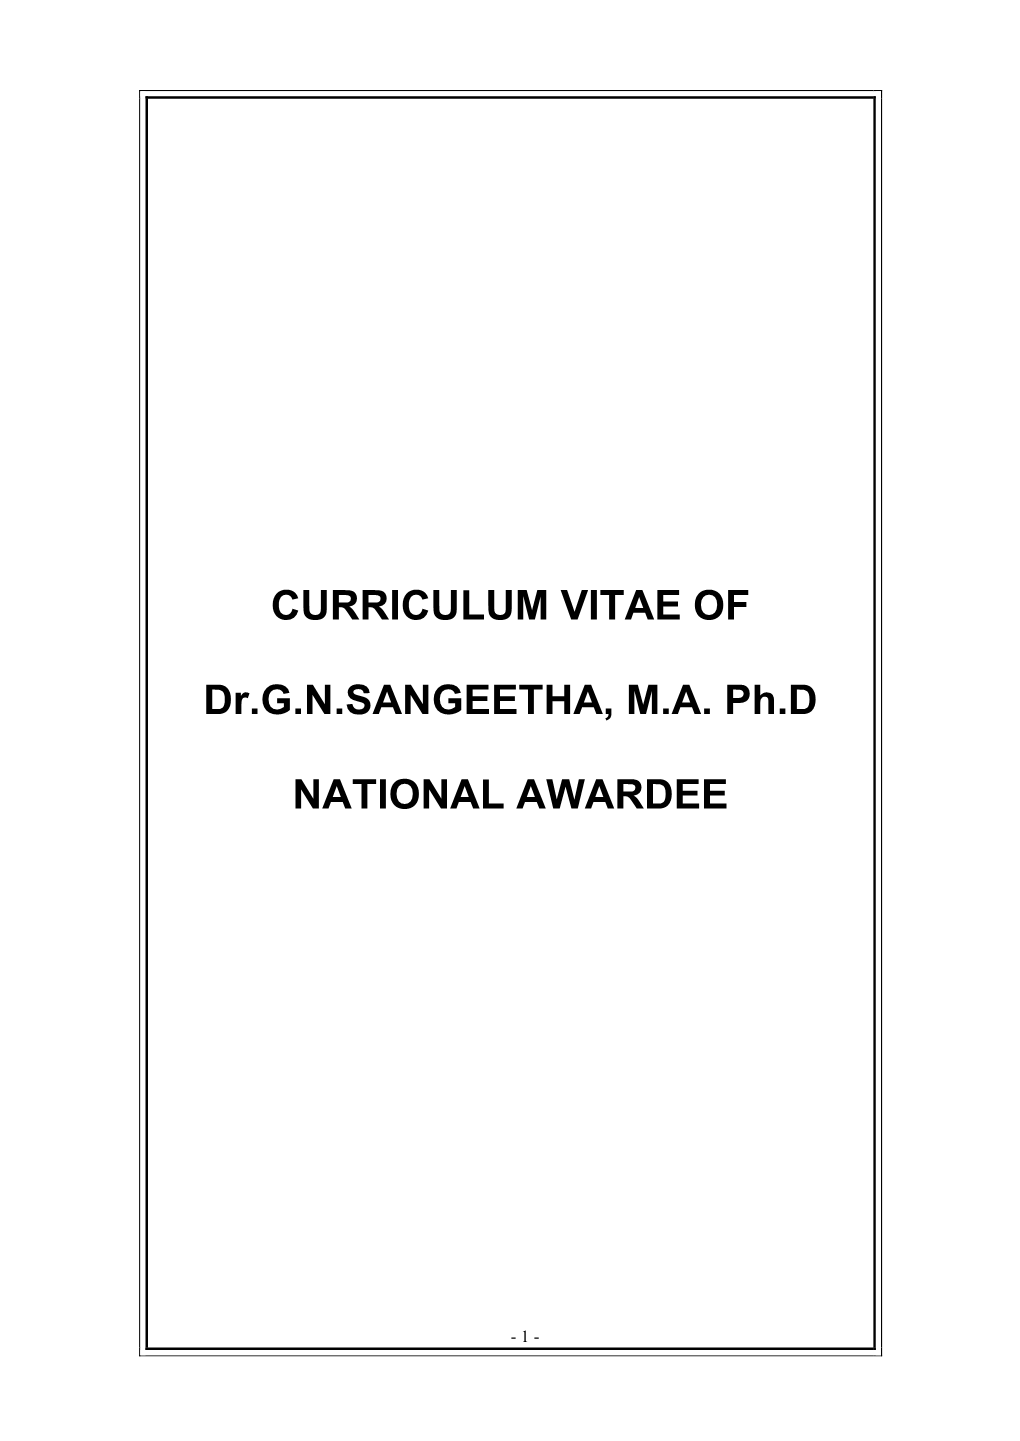 Dr.G.N.SANGEETHA, M.A